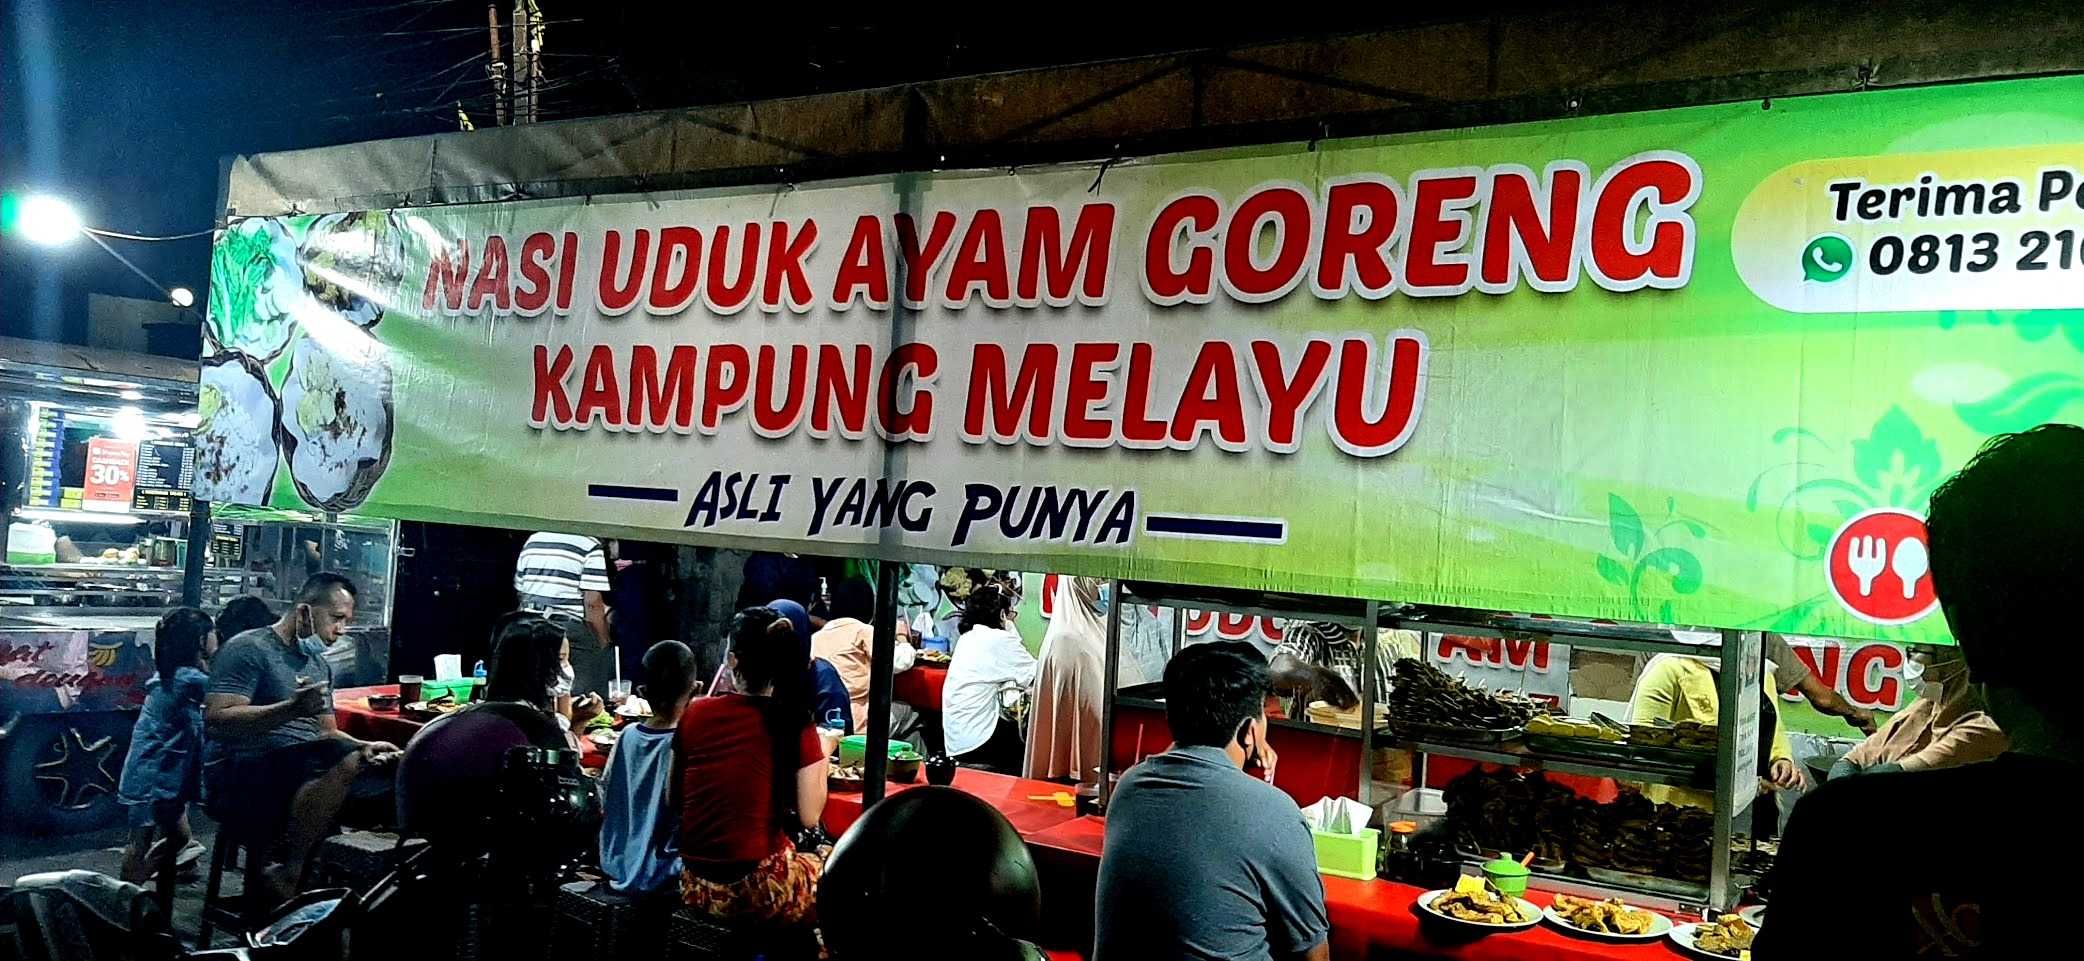 Nasi Uduk Ayam Goreng - Kampung Melayu 1